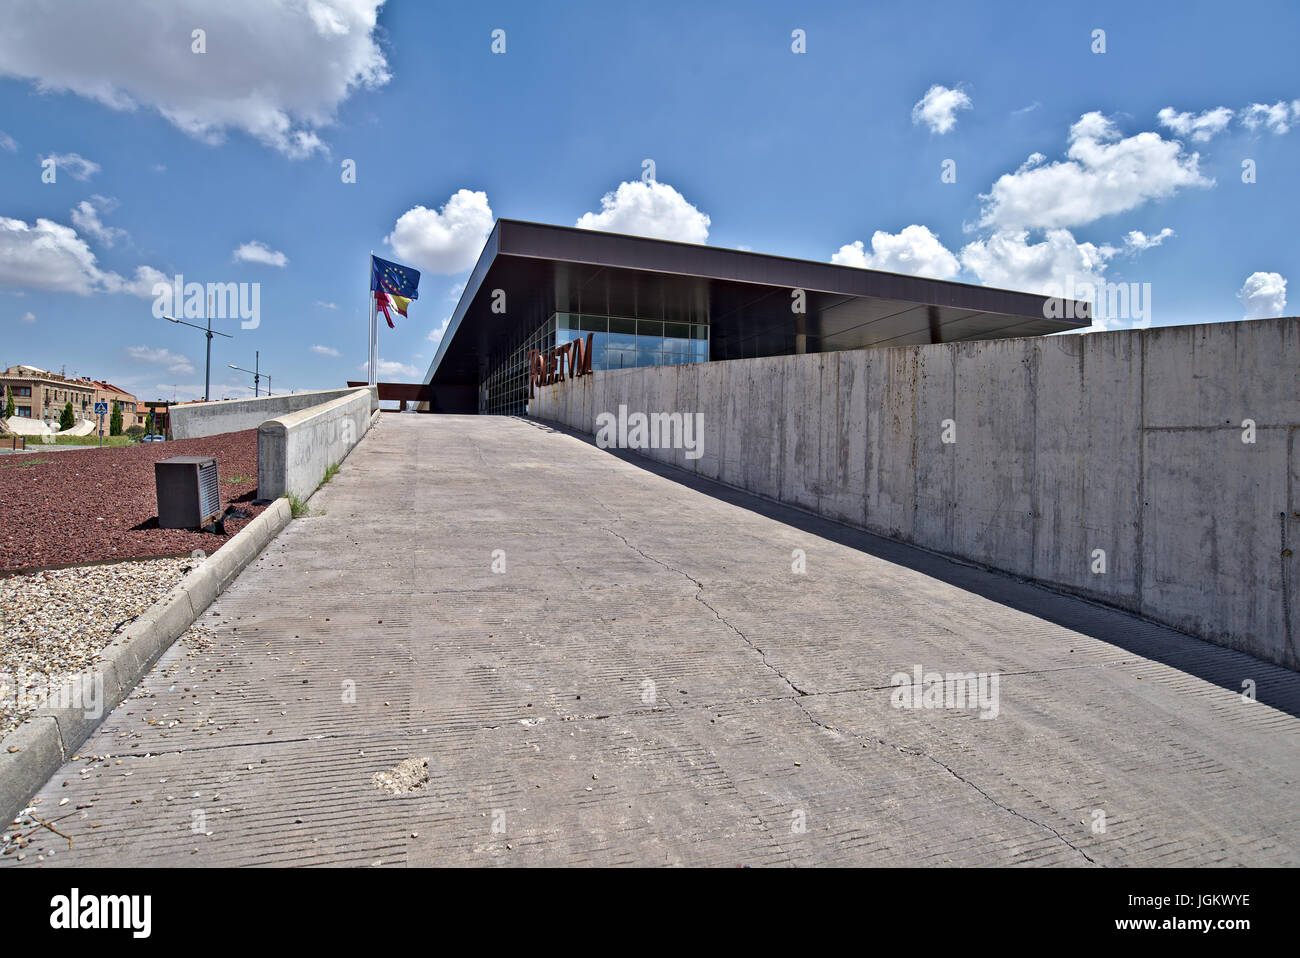 Toledo Toletum del centro turistico. Soccombente edificio pubblico costruzione oggi inutilizzati. Immagine presa a Toledo, Luglio 2017 Foto Stock